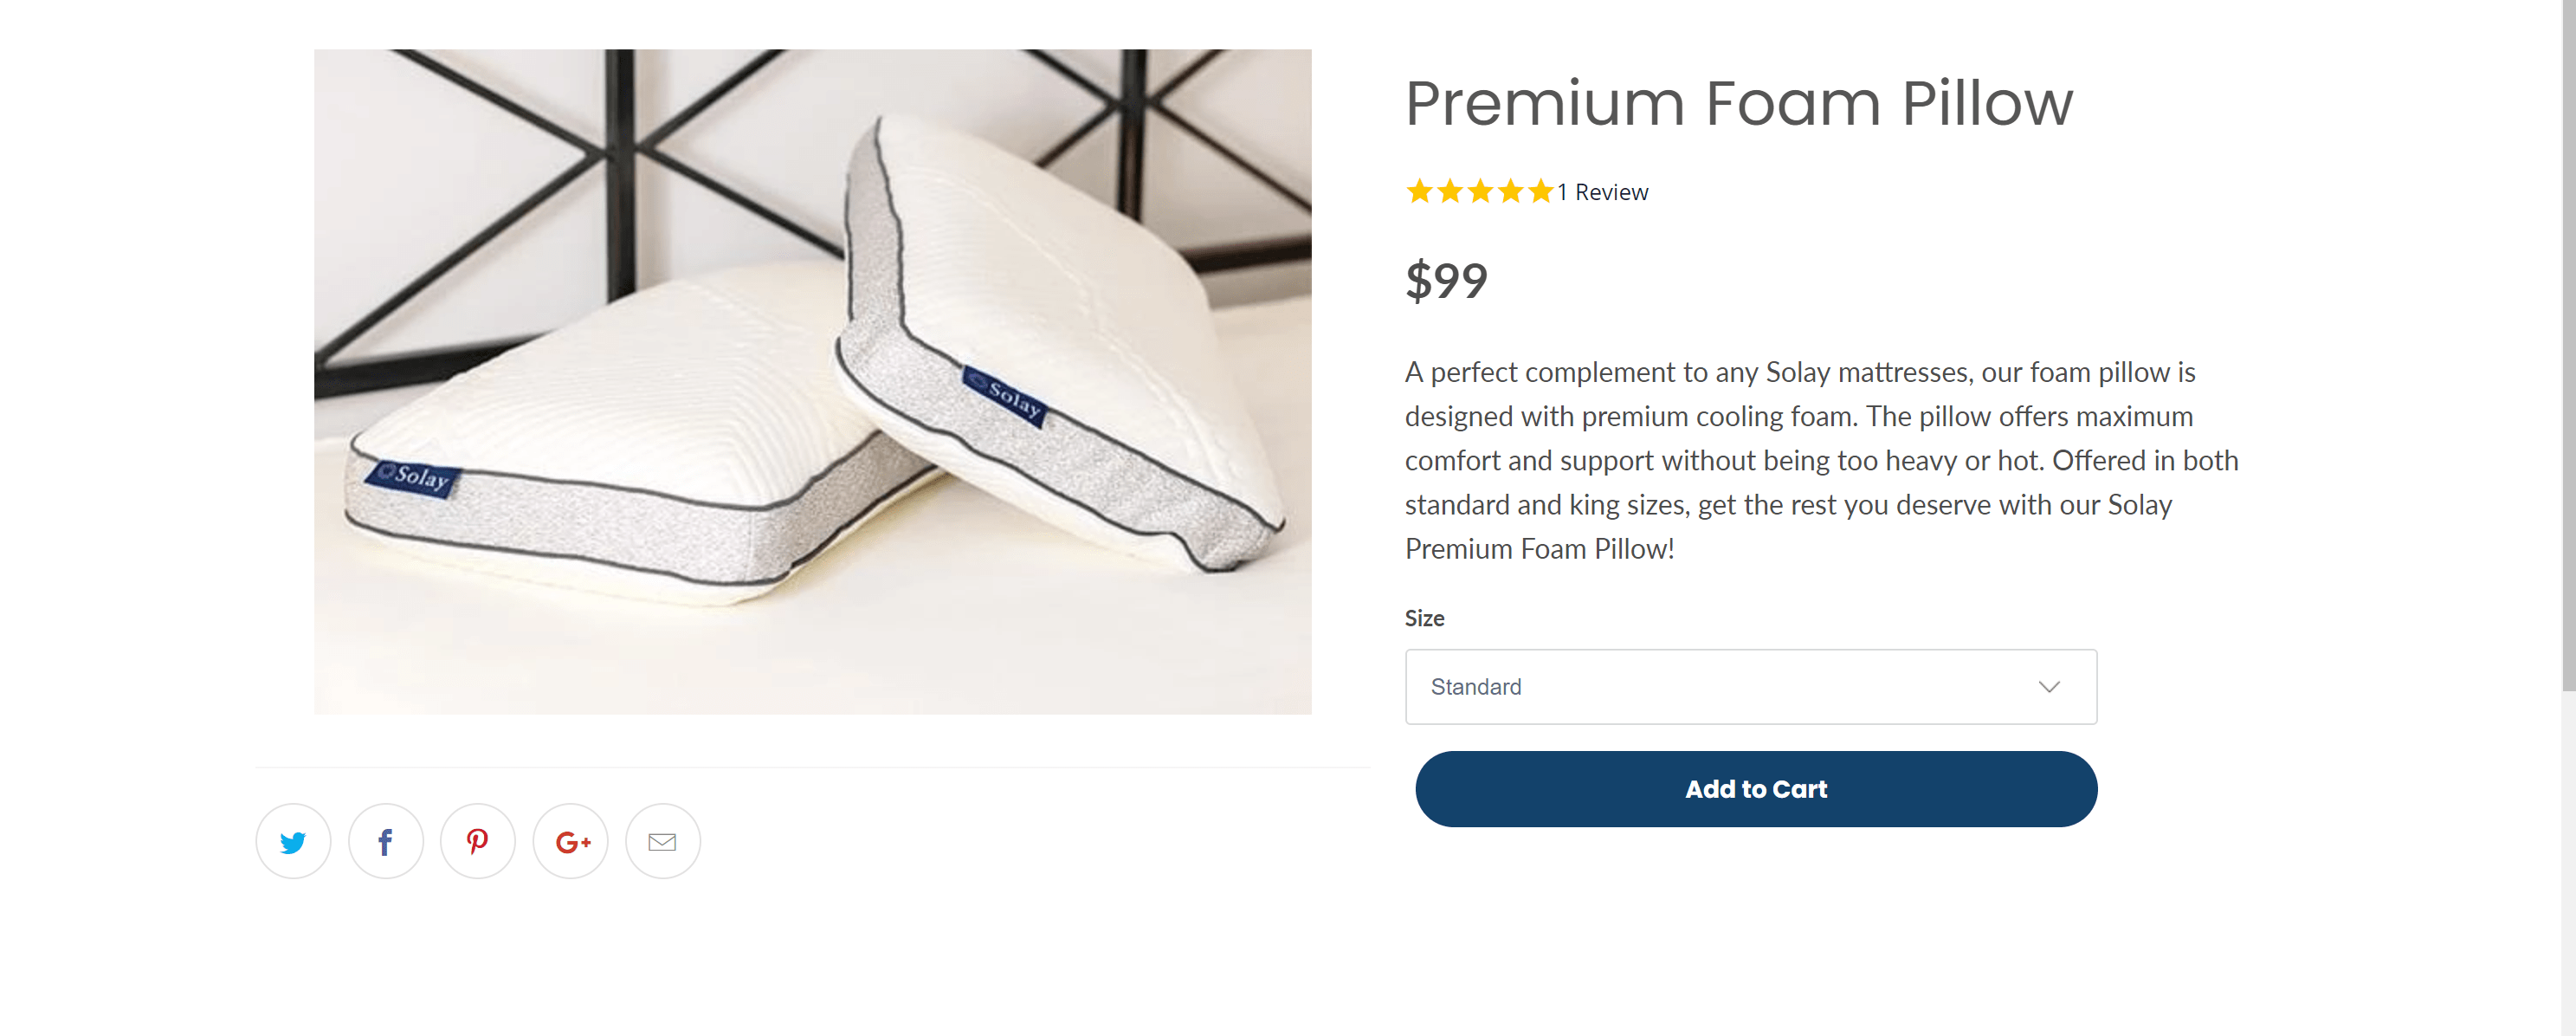 Premium Foam Pillow